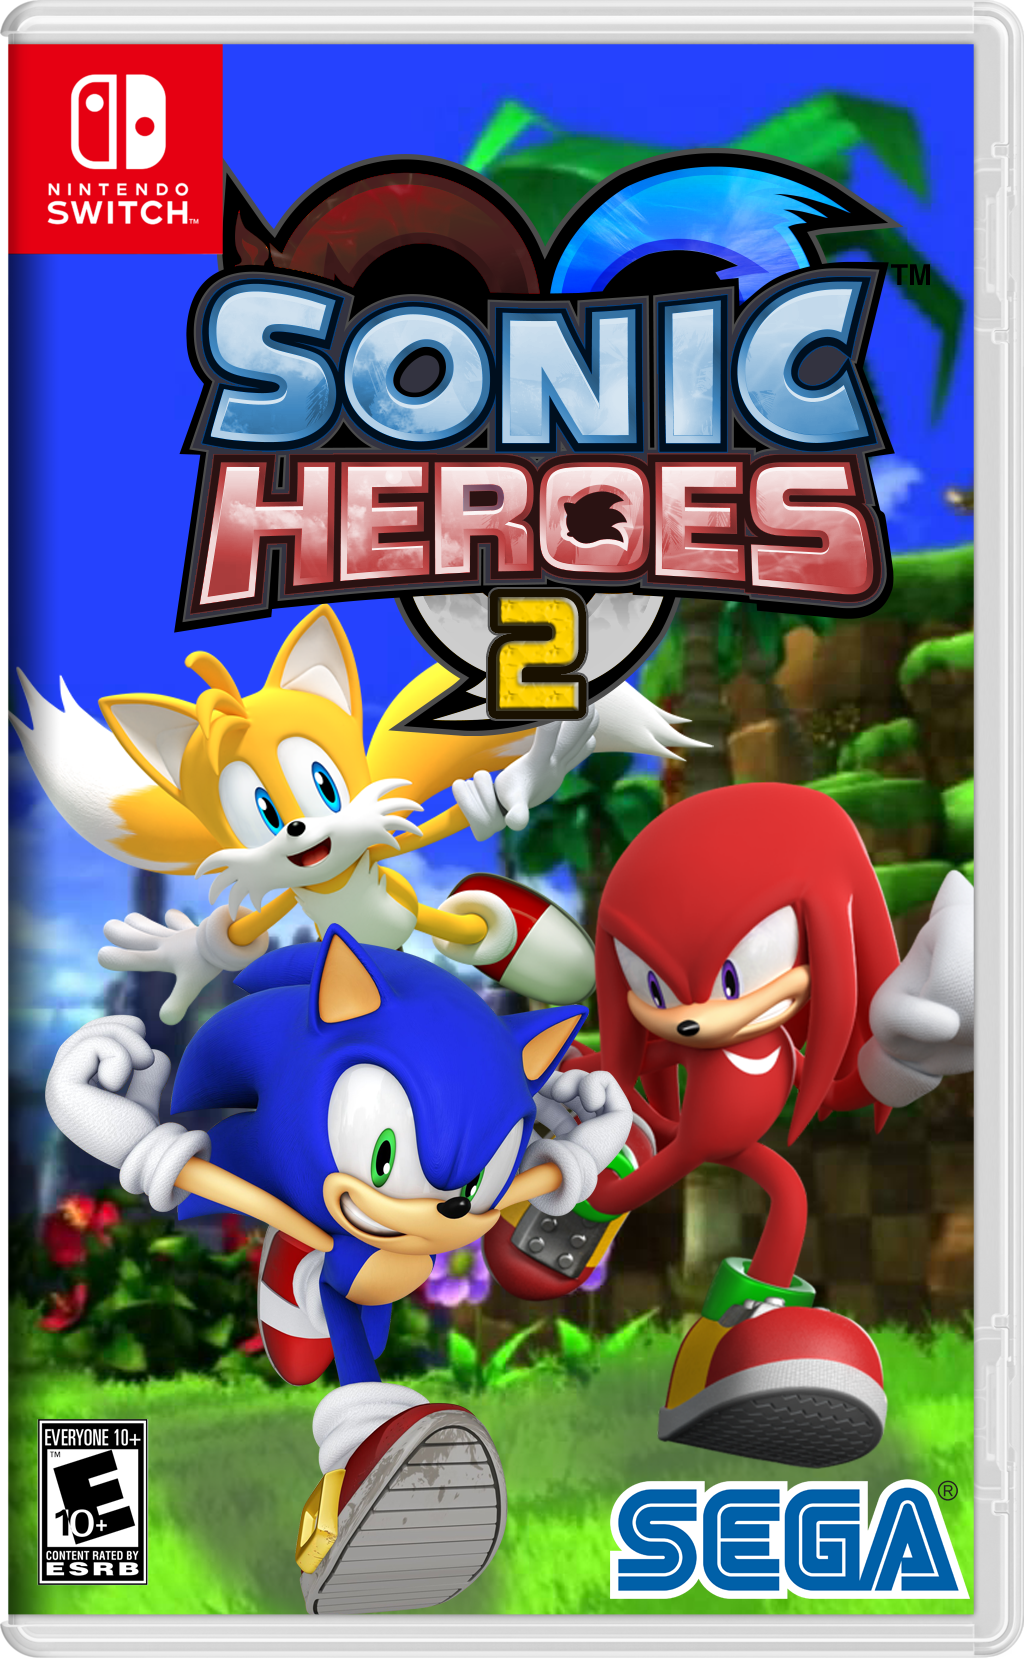 sonic the hedgehog 2 heroes